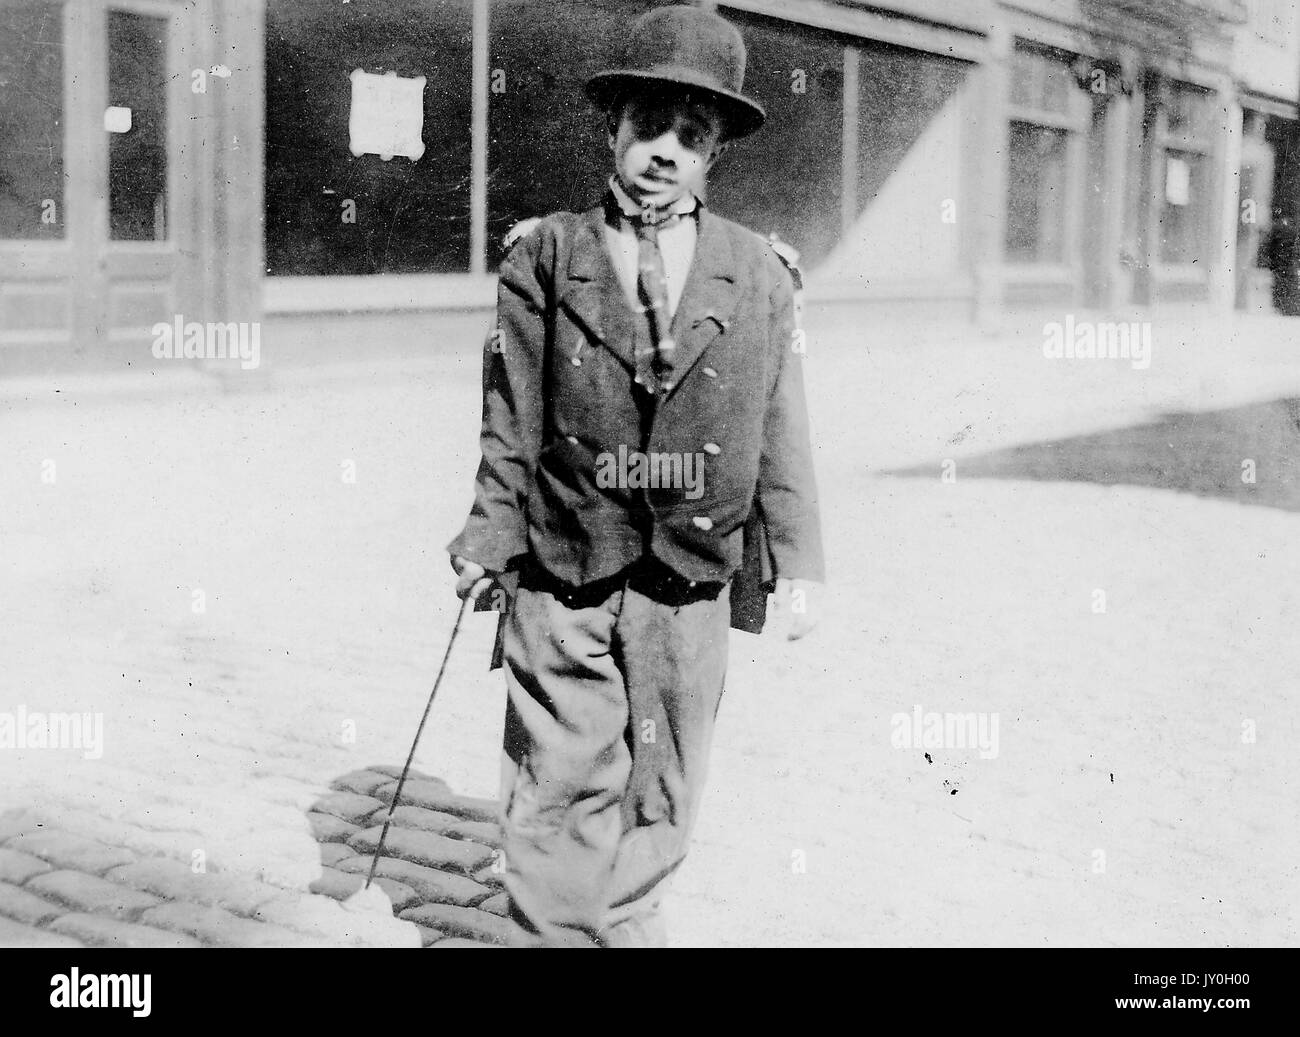 In voller Länge stehend Porträt von afroamerikanischen Kind, verkleidet als Charlie Chaplin in übergroßen Mantel und Hose, Krawatte und Melone Hut, tragende Stock, im Freien stehend, neutraler Ausdruck, 1925. Stockfoto